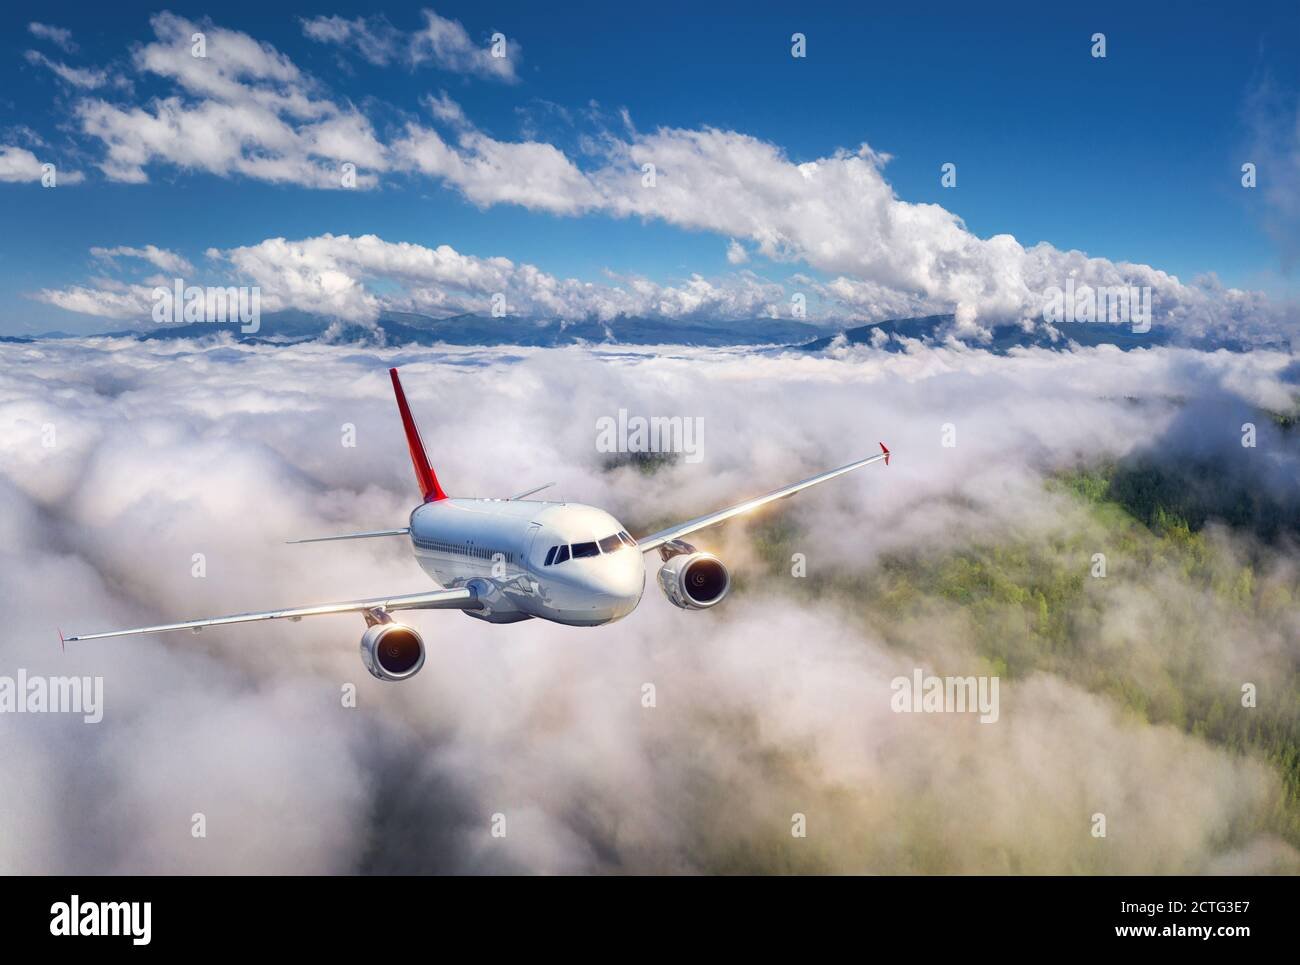 avion despegando al atardecer sobre nubes